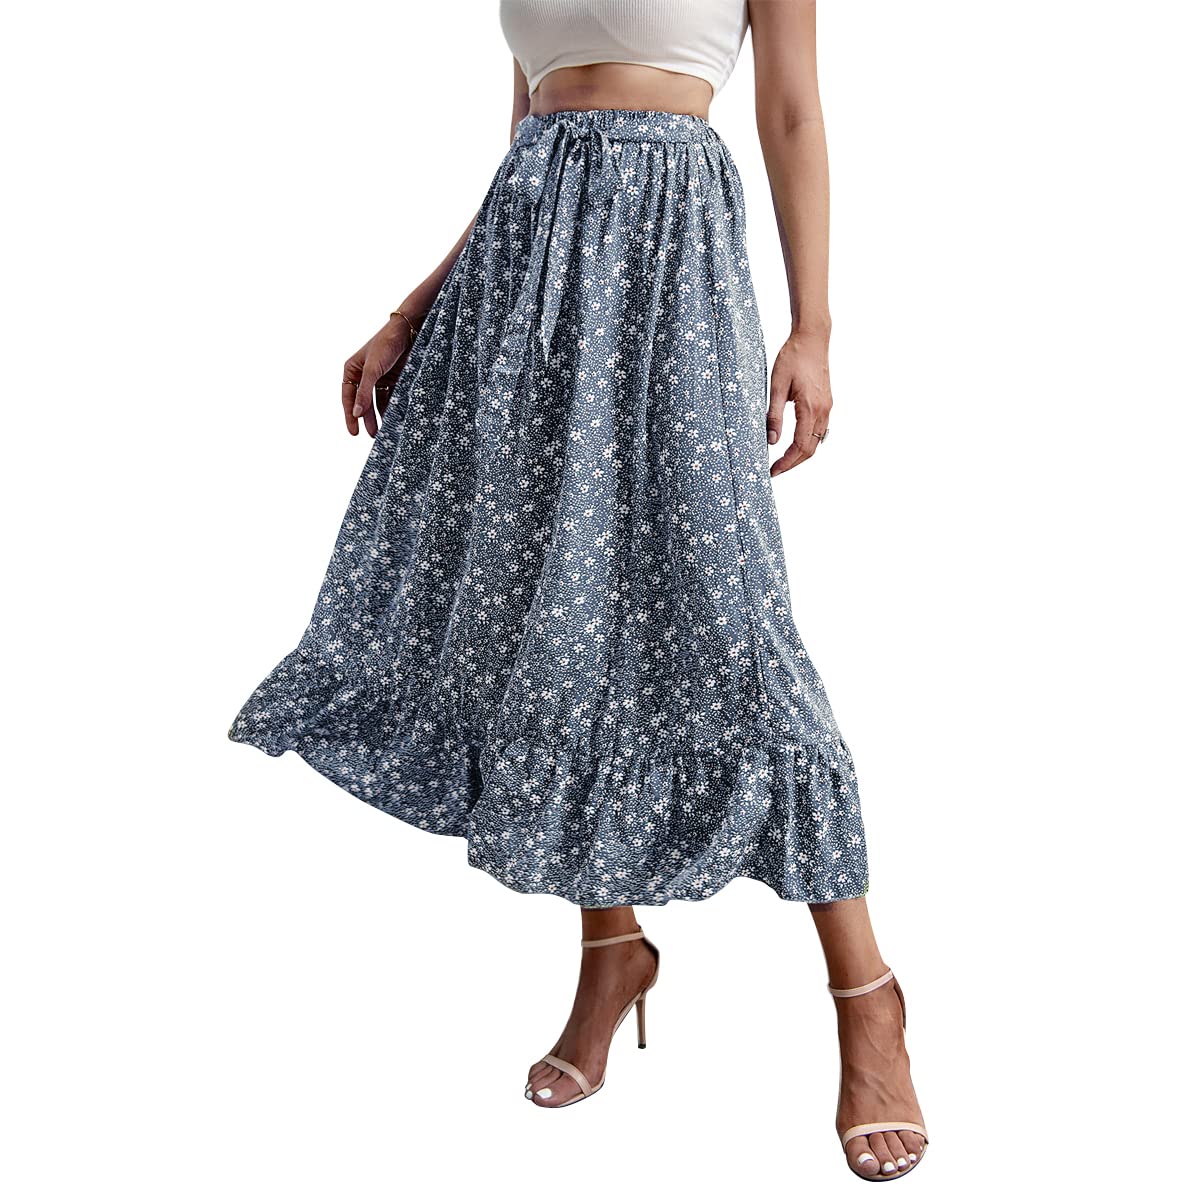 Summer Women's Floral High Waist Boho Skirt A-Line Midi Skirt Chiffon Beach Long Skirts Sweet and Fresh Ruffle Hem Skirt